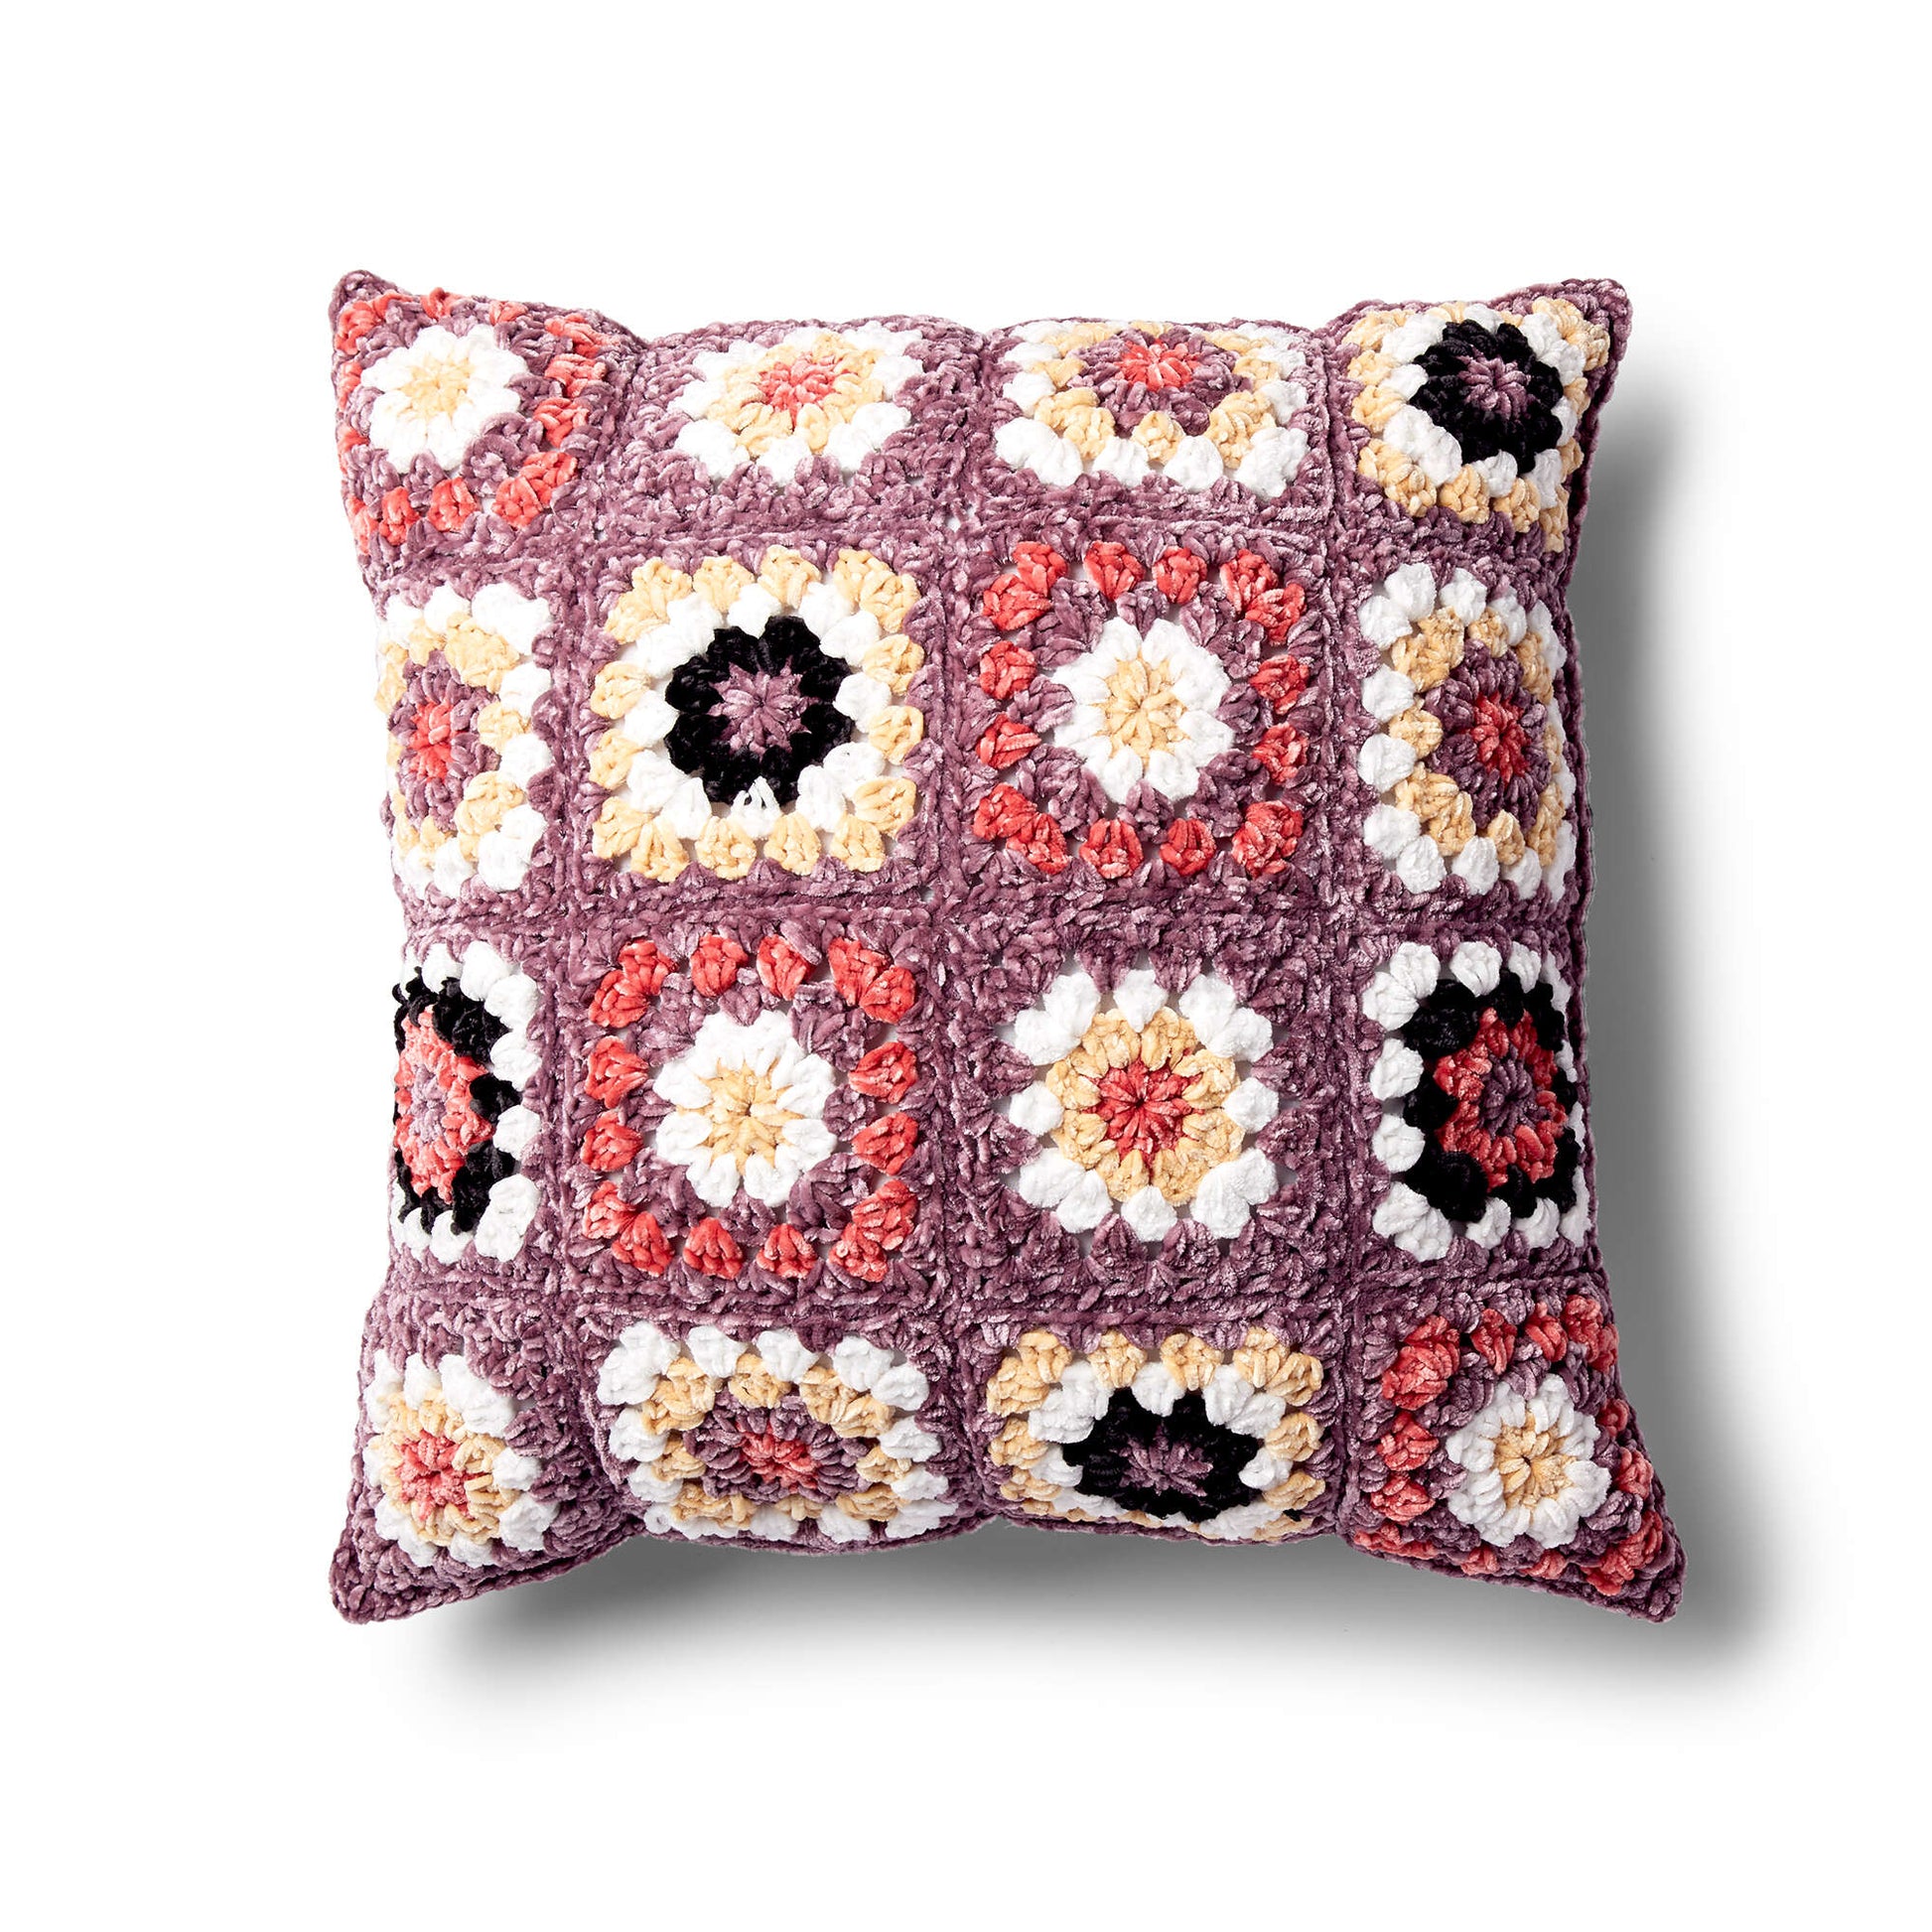 Bernat Pretty Granny Square Pillow Crochet Pillow made in Bernat Velvet yarn